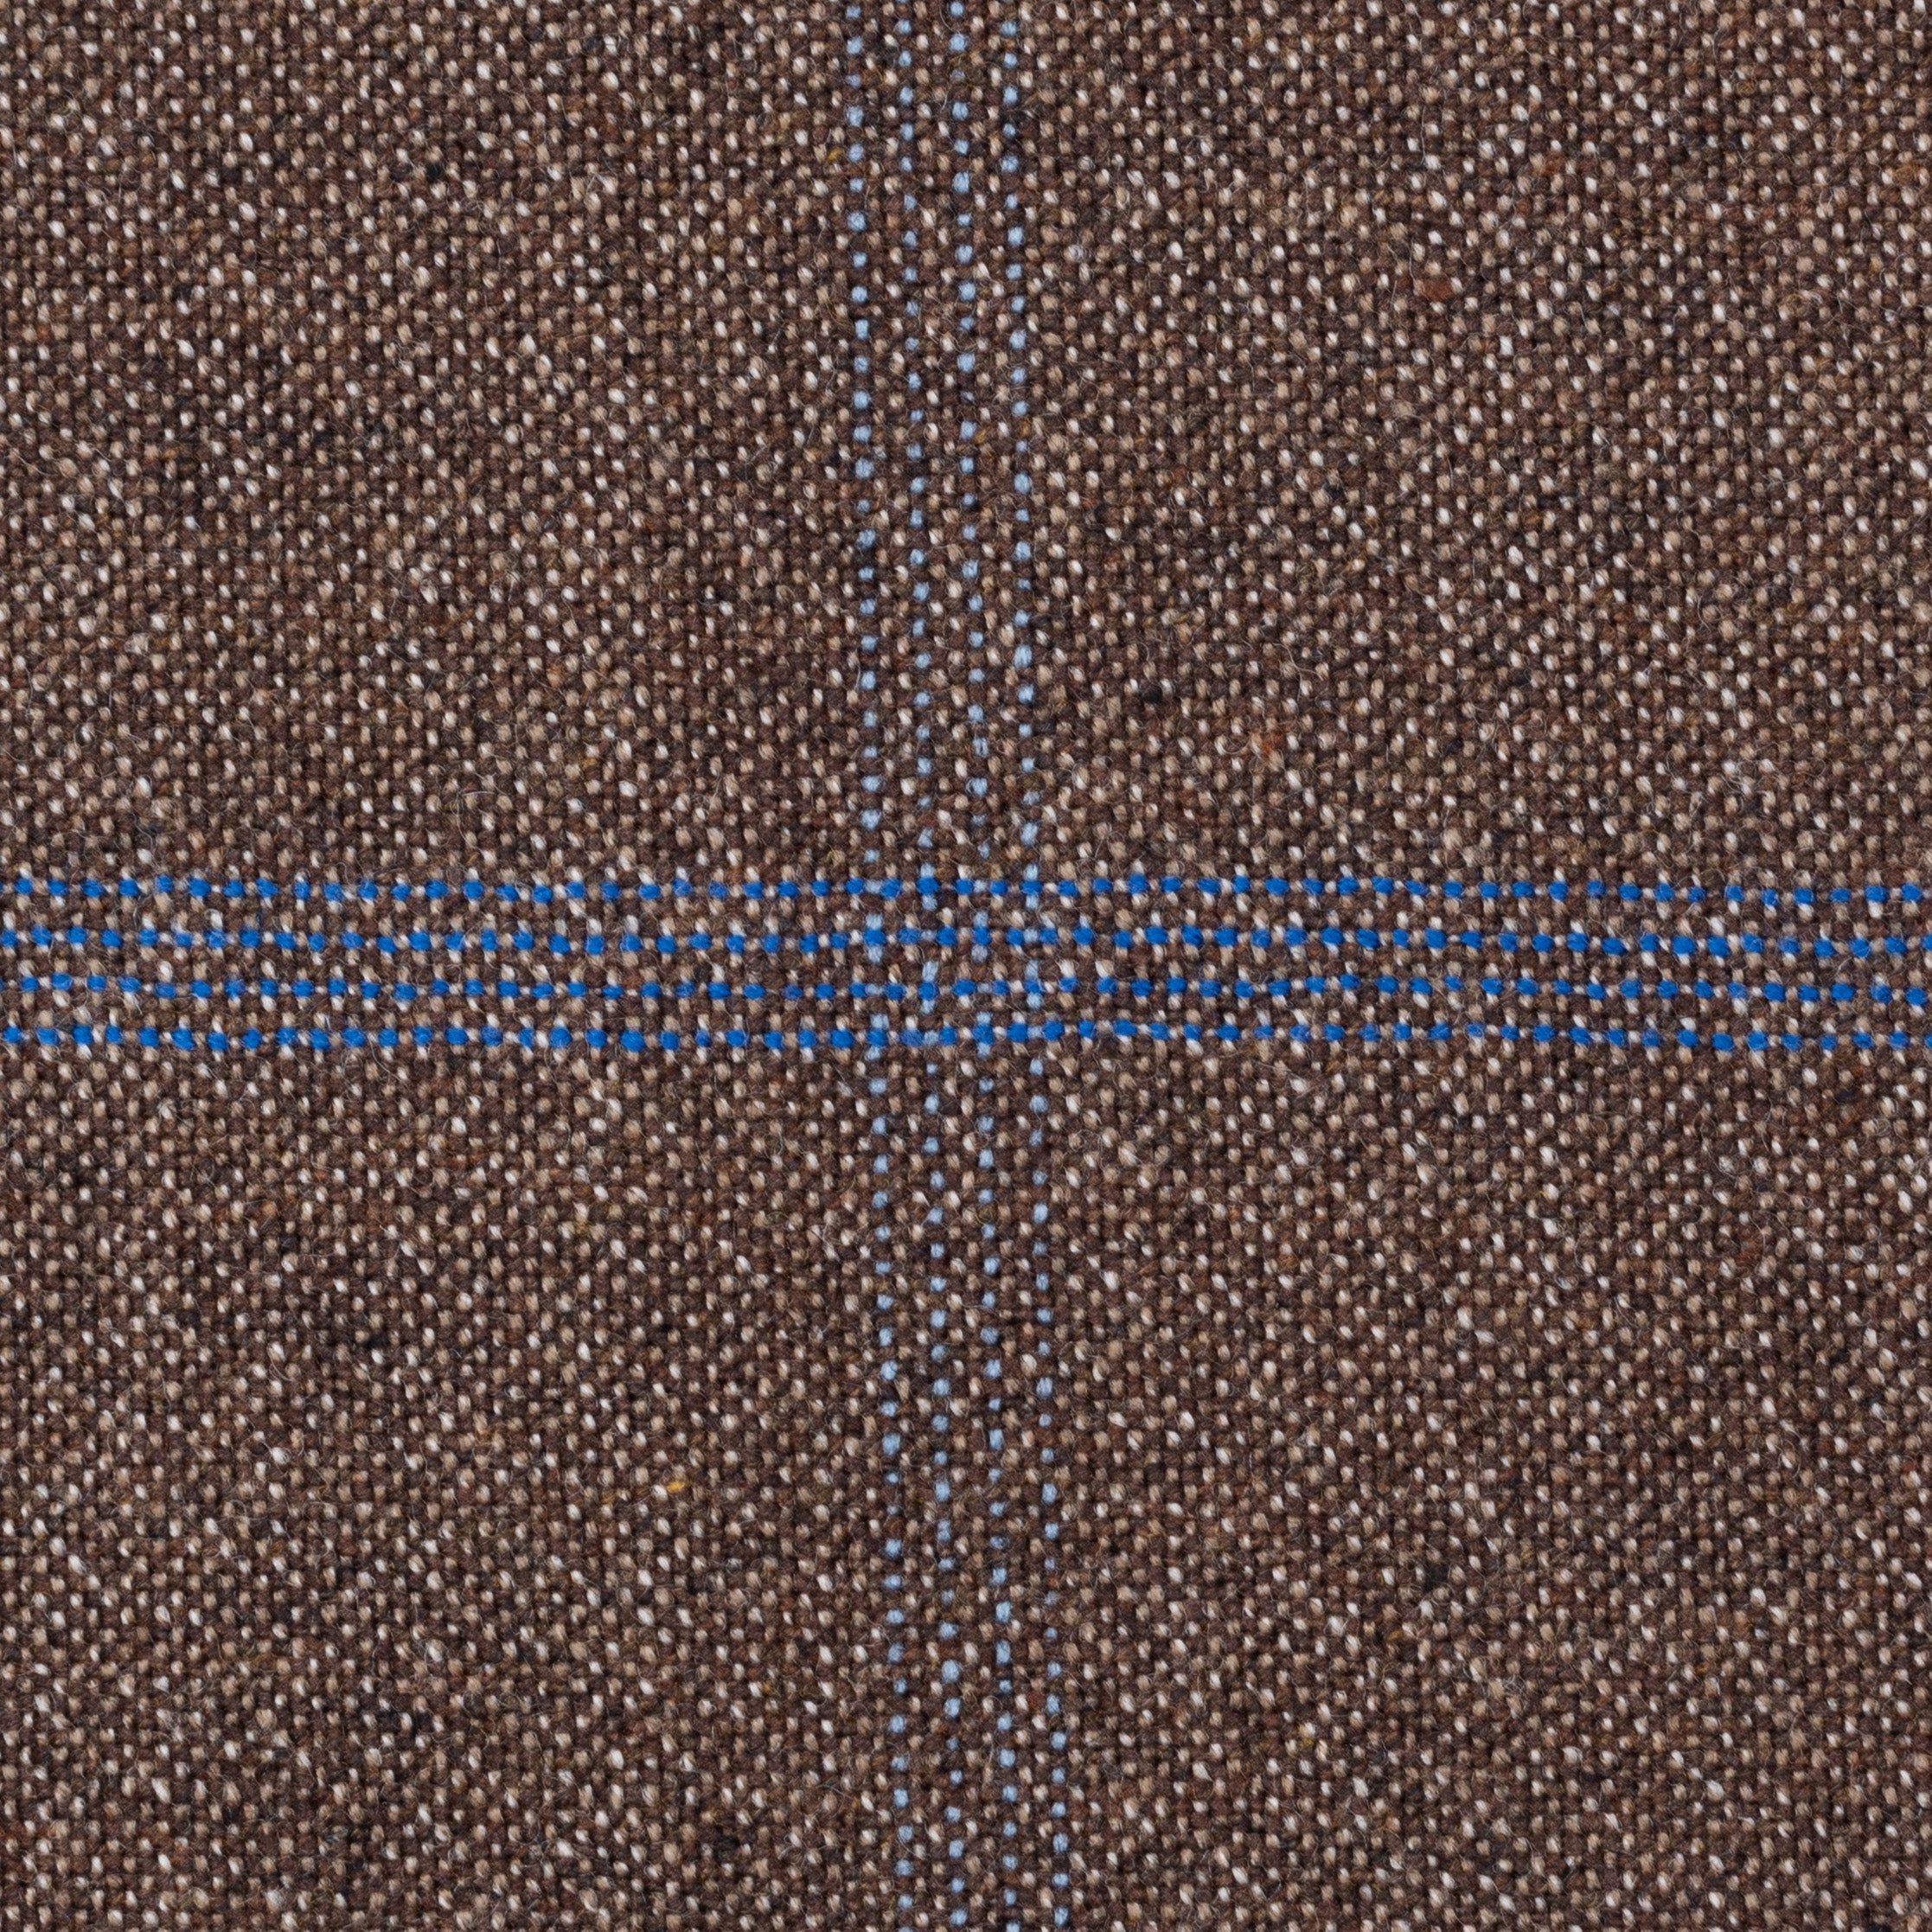 Sartoria CESARE ATTOLINI Brown Windowpane Wool-Angora Suit EU 48 NEW US 38 CESARE ATTOLINI